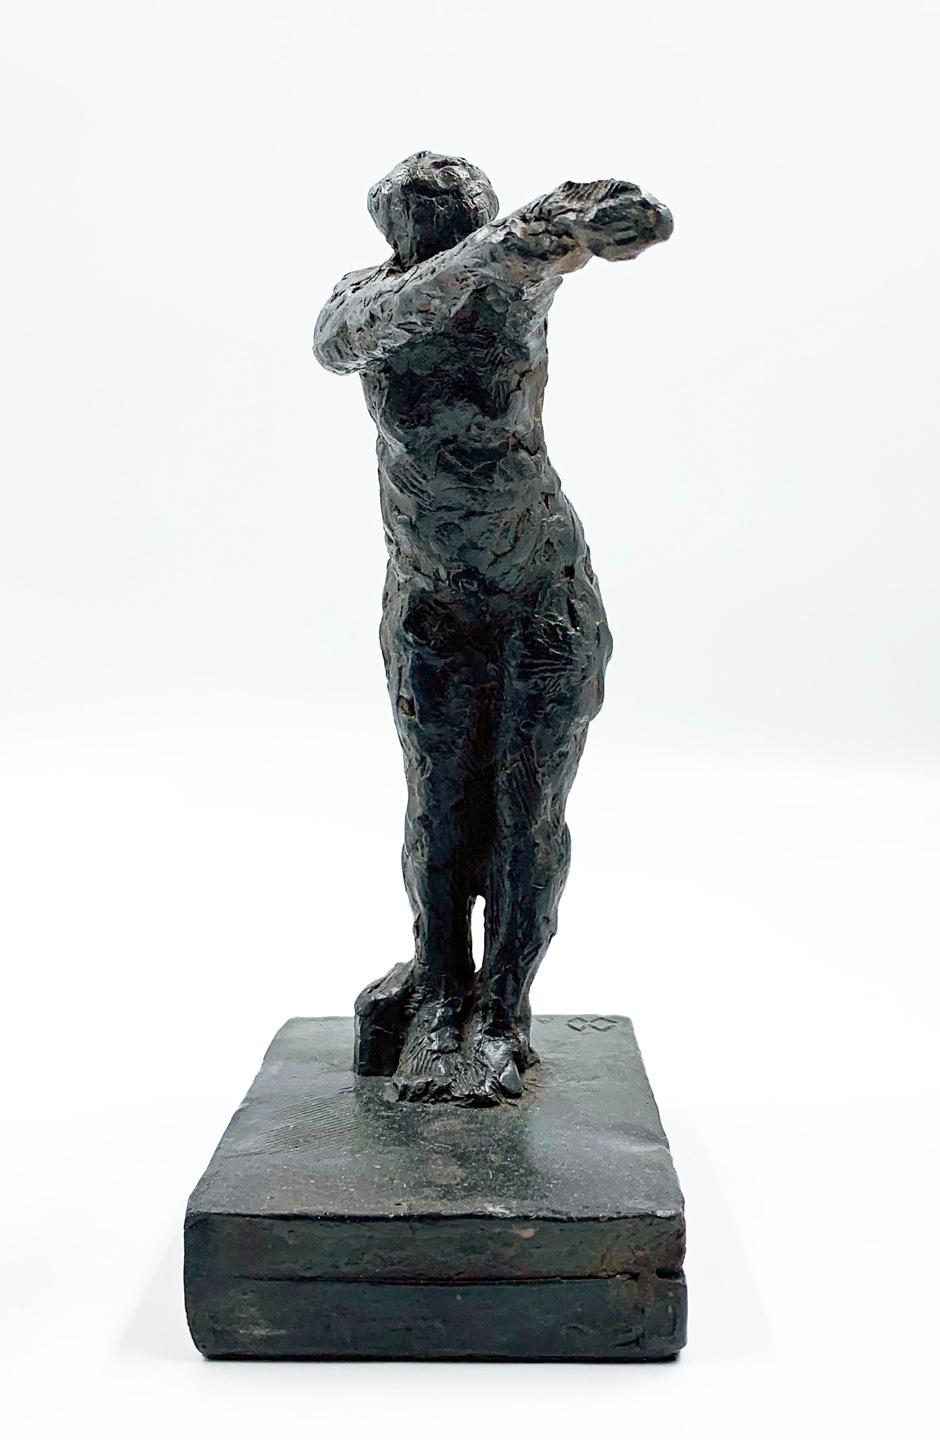 Dancing with my Handtasche - zeitgenössische figurative Bronzeskulptur – Sculpture von Manny Woodard